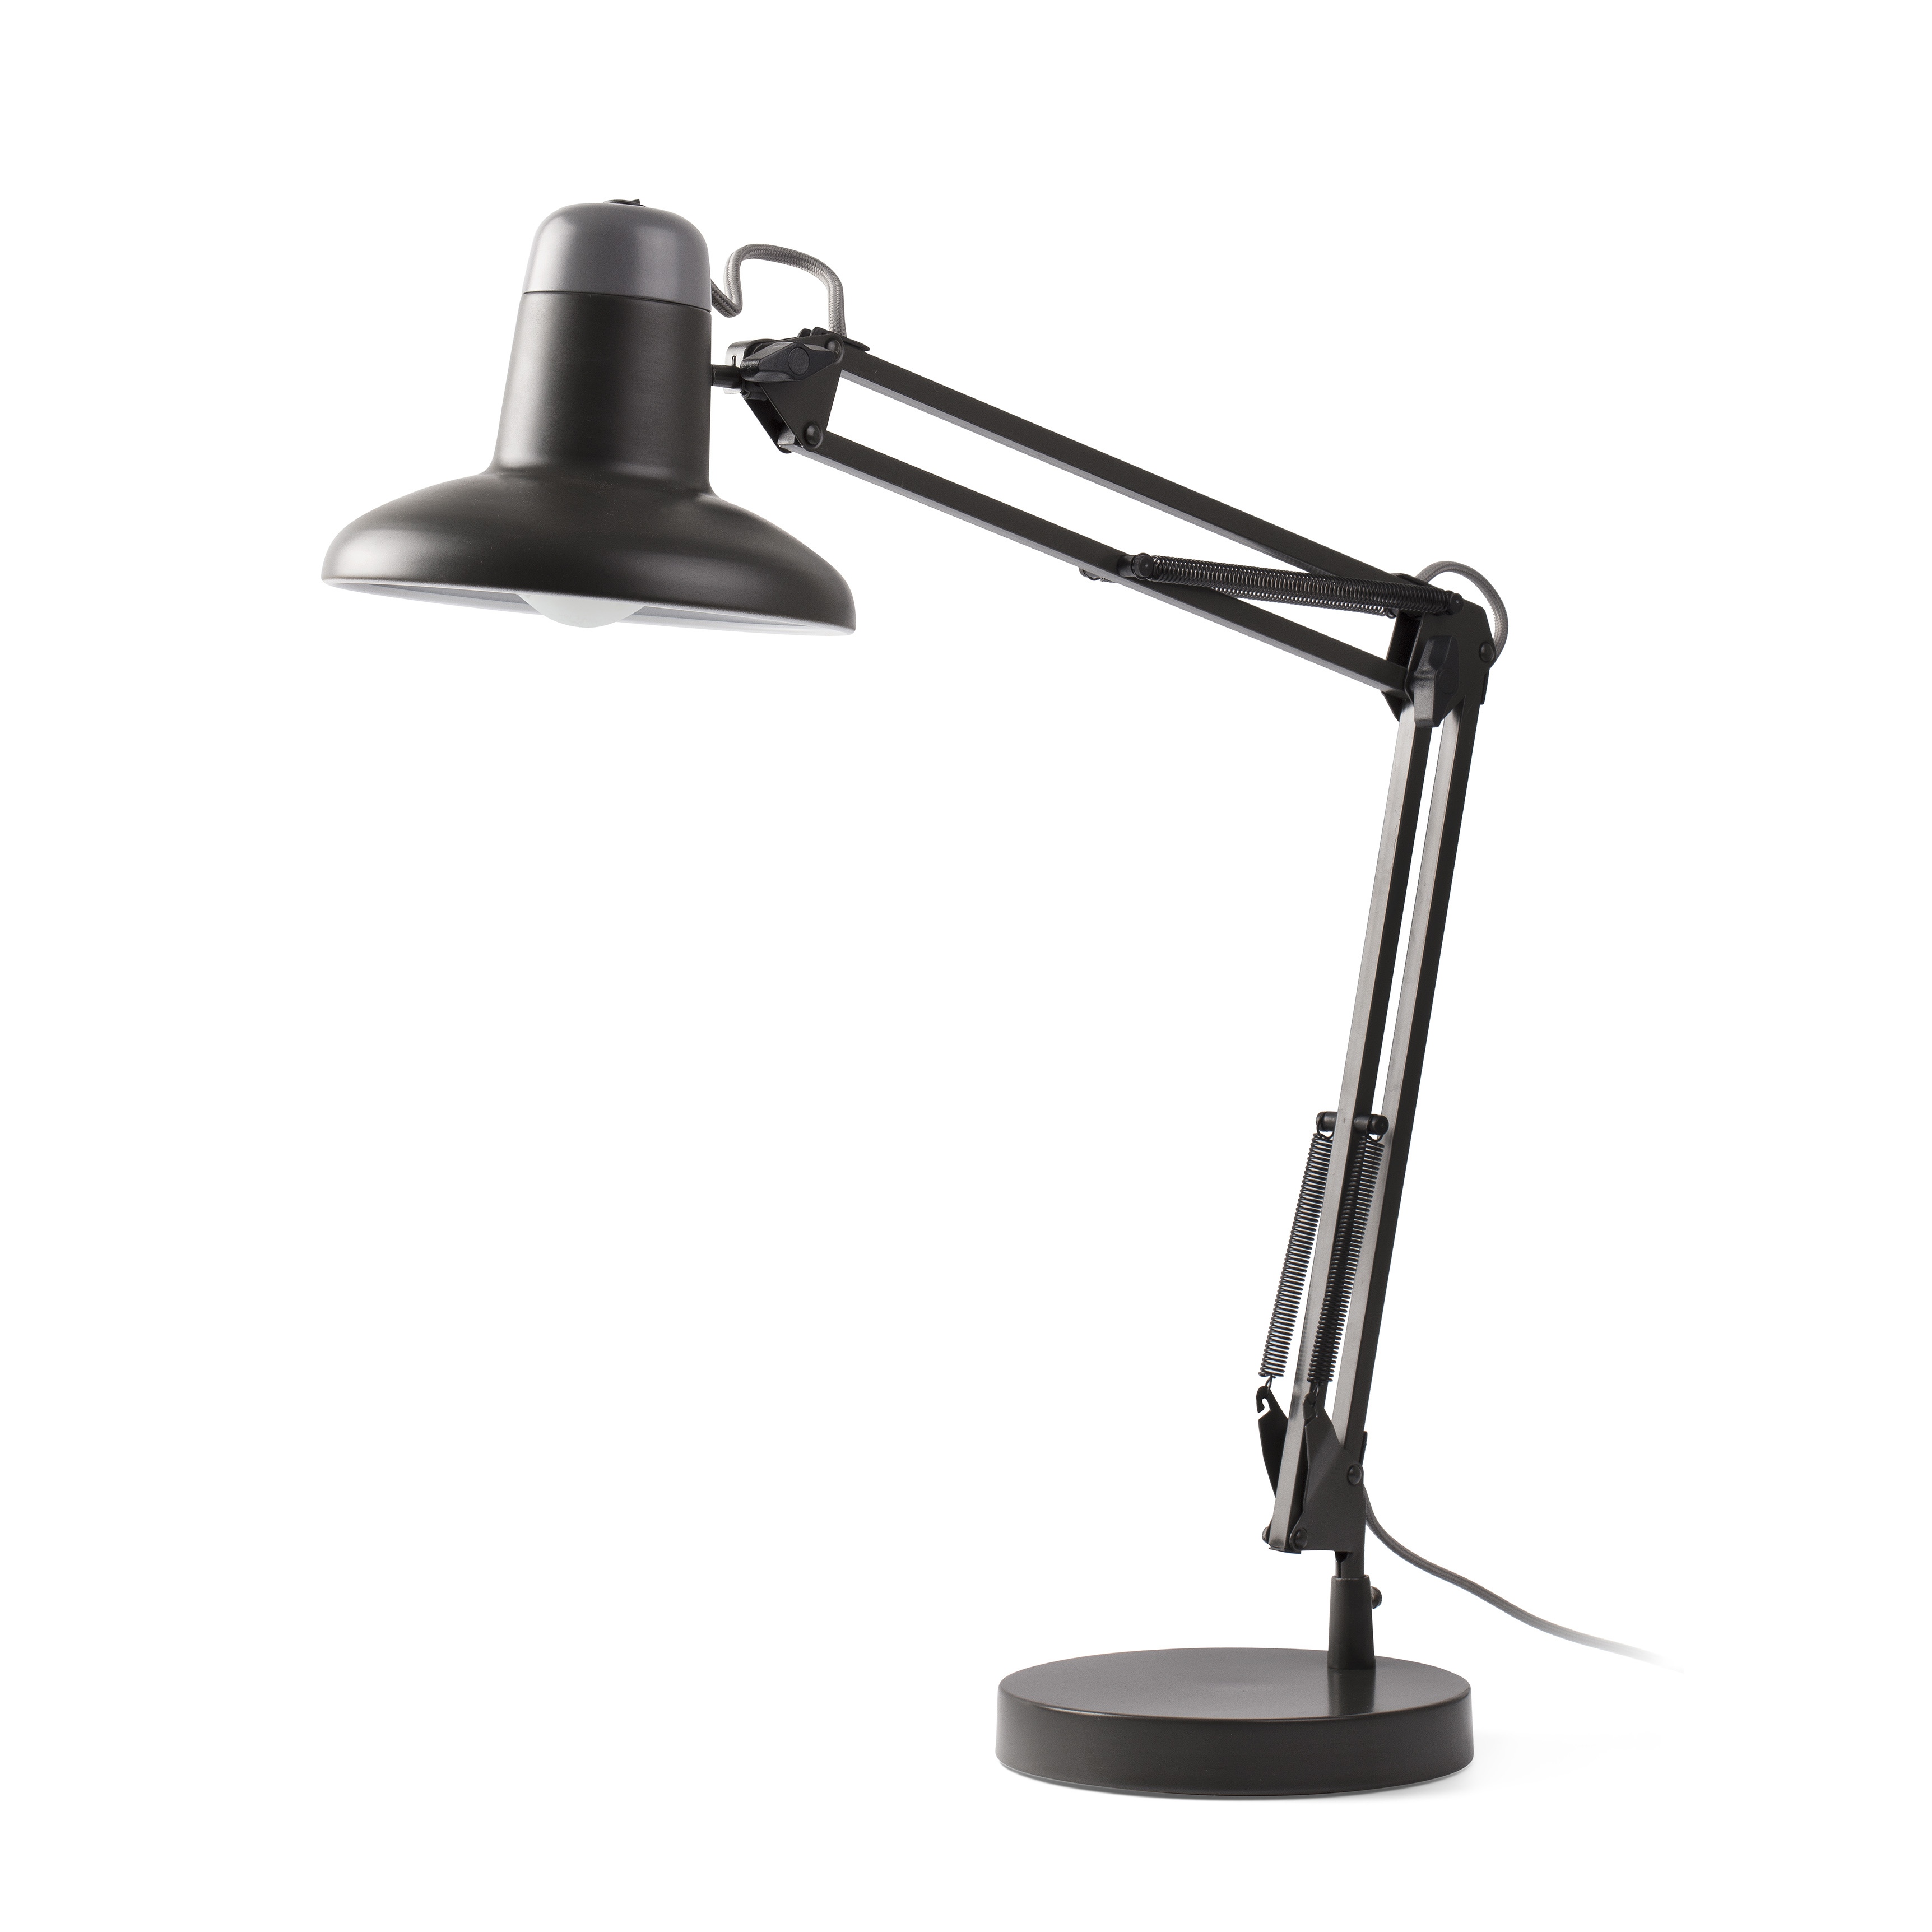 Lampa / Veioza birou cu brat articulat design modern SNAP gri 57401